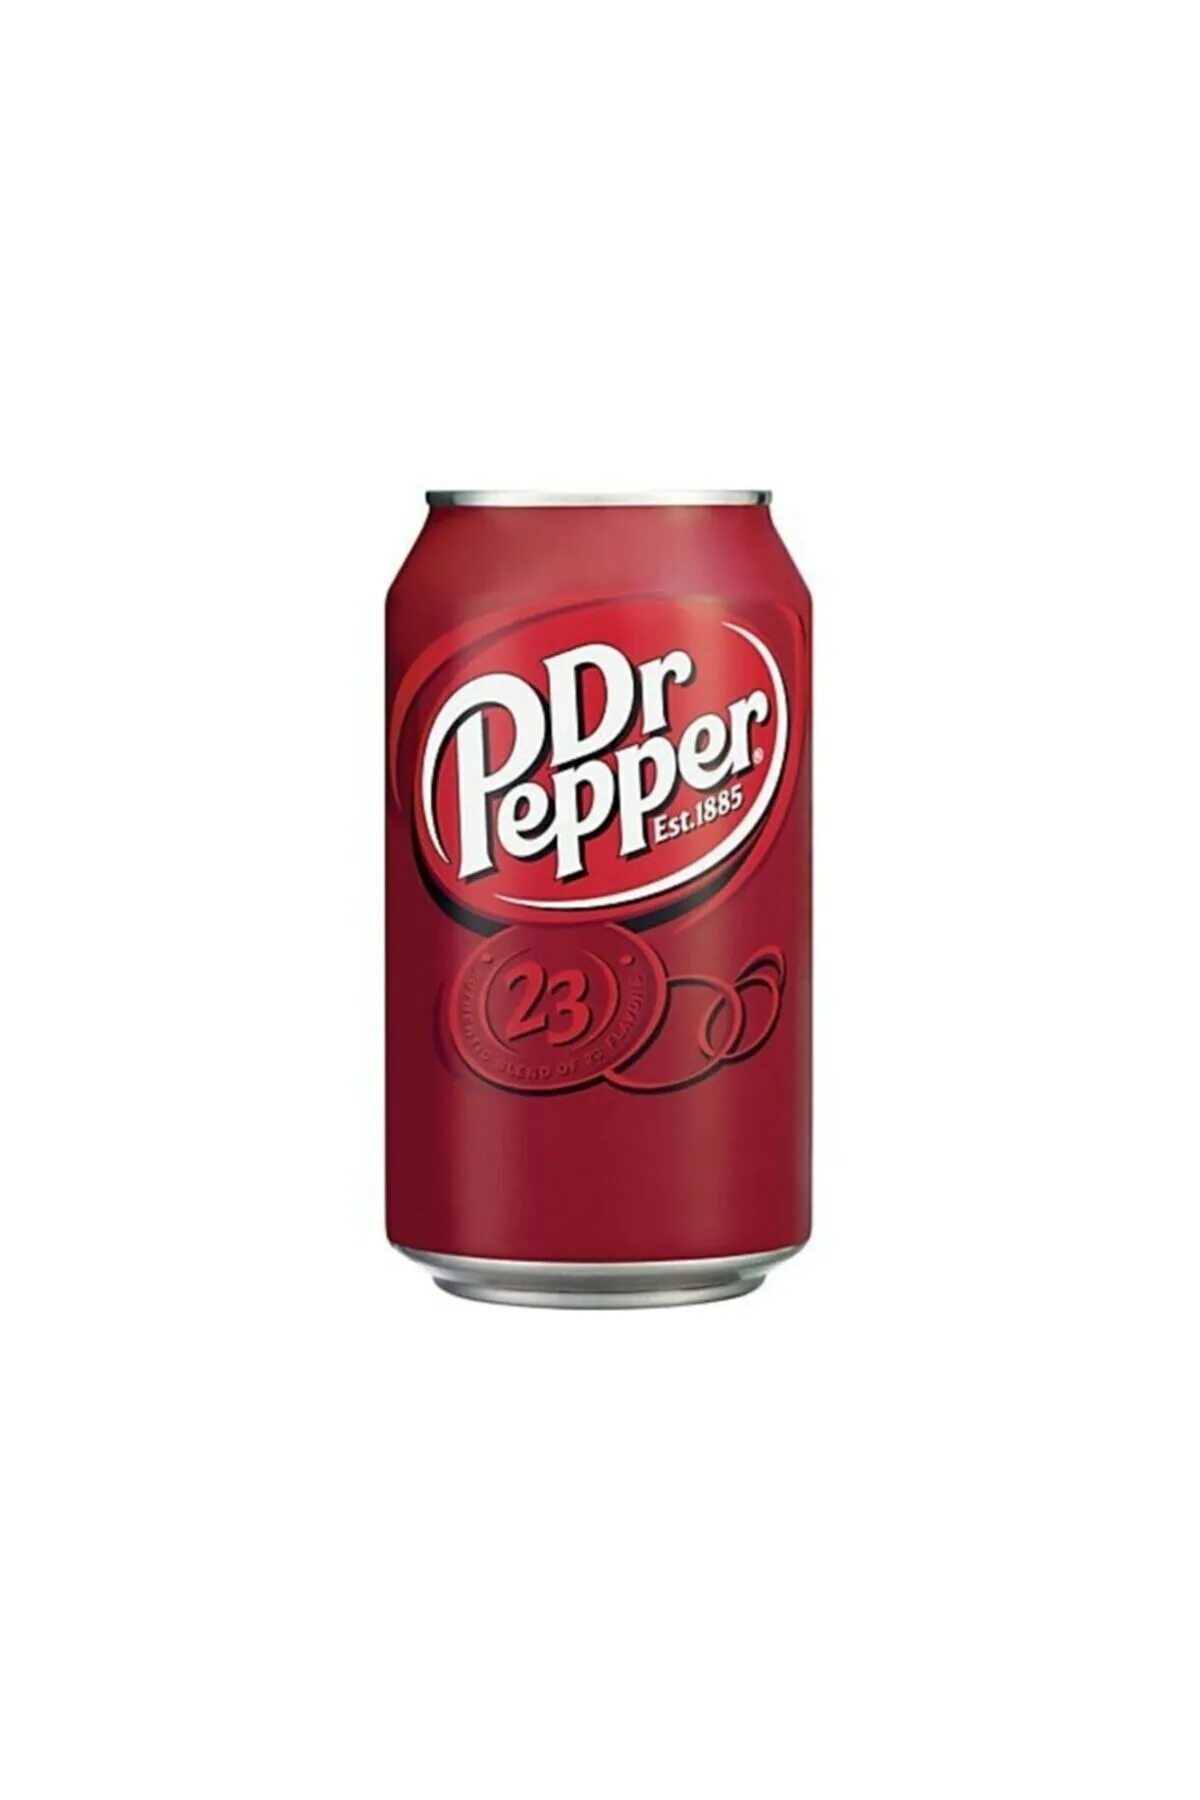 Pepper напиток. Доктор Пеппер. Газированный напиток Dr Pepper 23 Classic, США. Доктор Пеппер Польша. Доктор Пеппер 0.5.